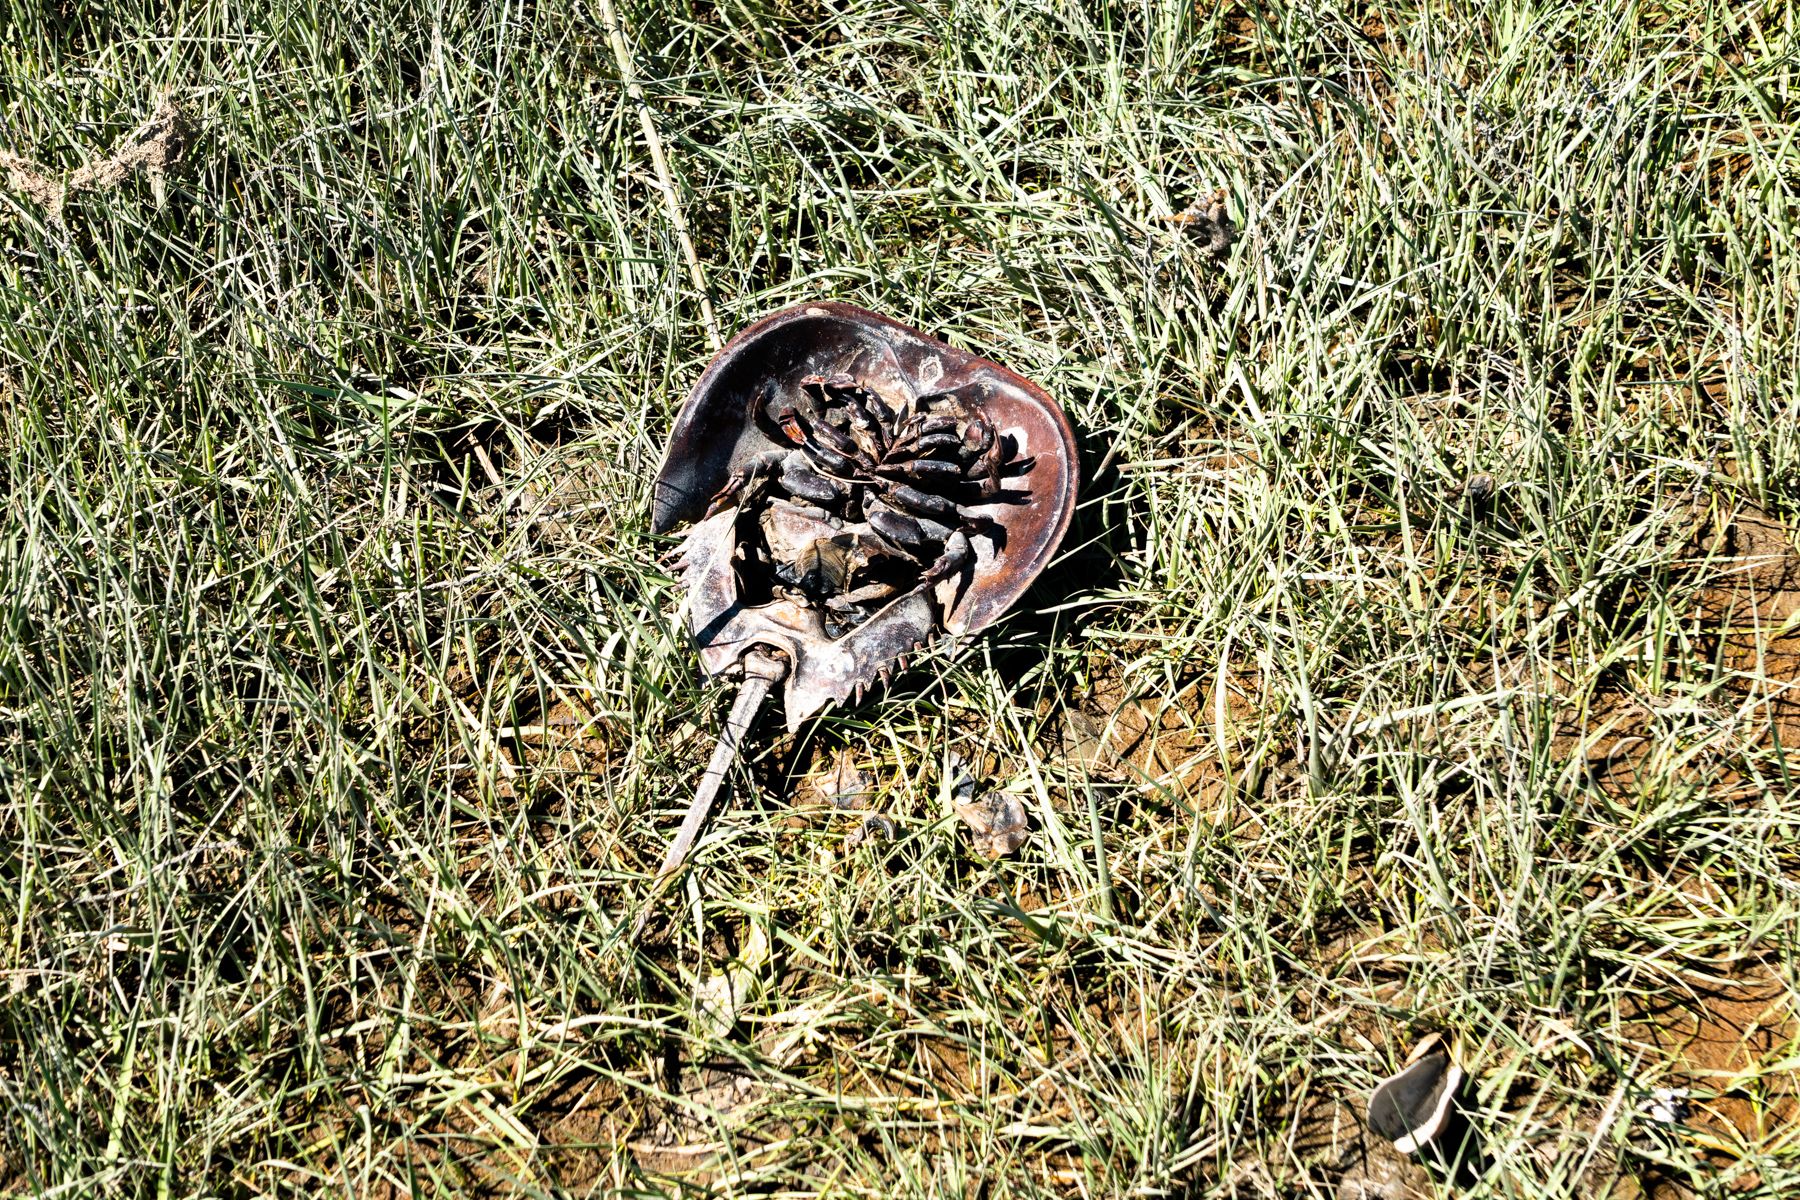 A closeup of the dead horseshoe crab